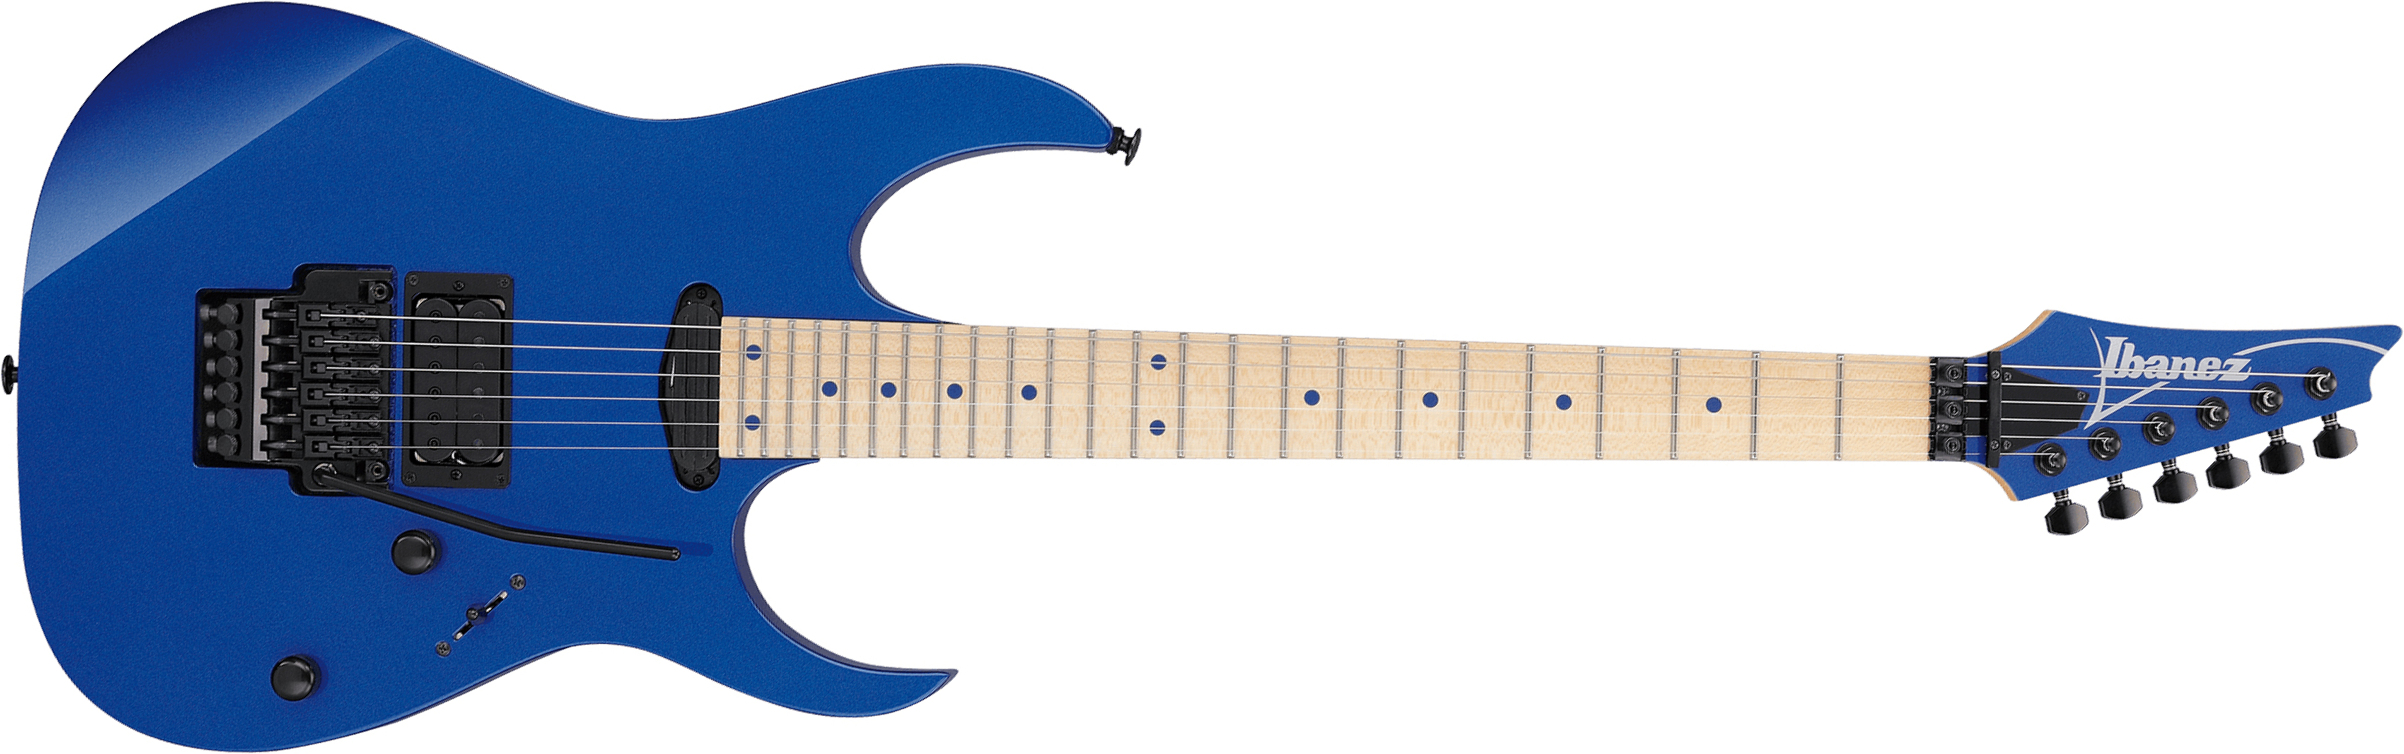 Ibanez Rg565 Lb Genesis Jap Hst Fr Mn - Laser Blue - Guitare Électrique Forme Str - Main picture